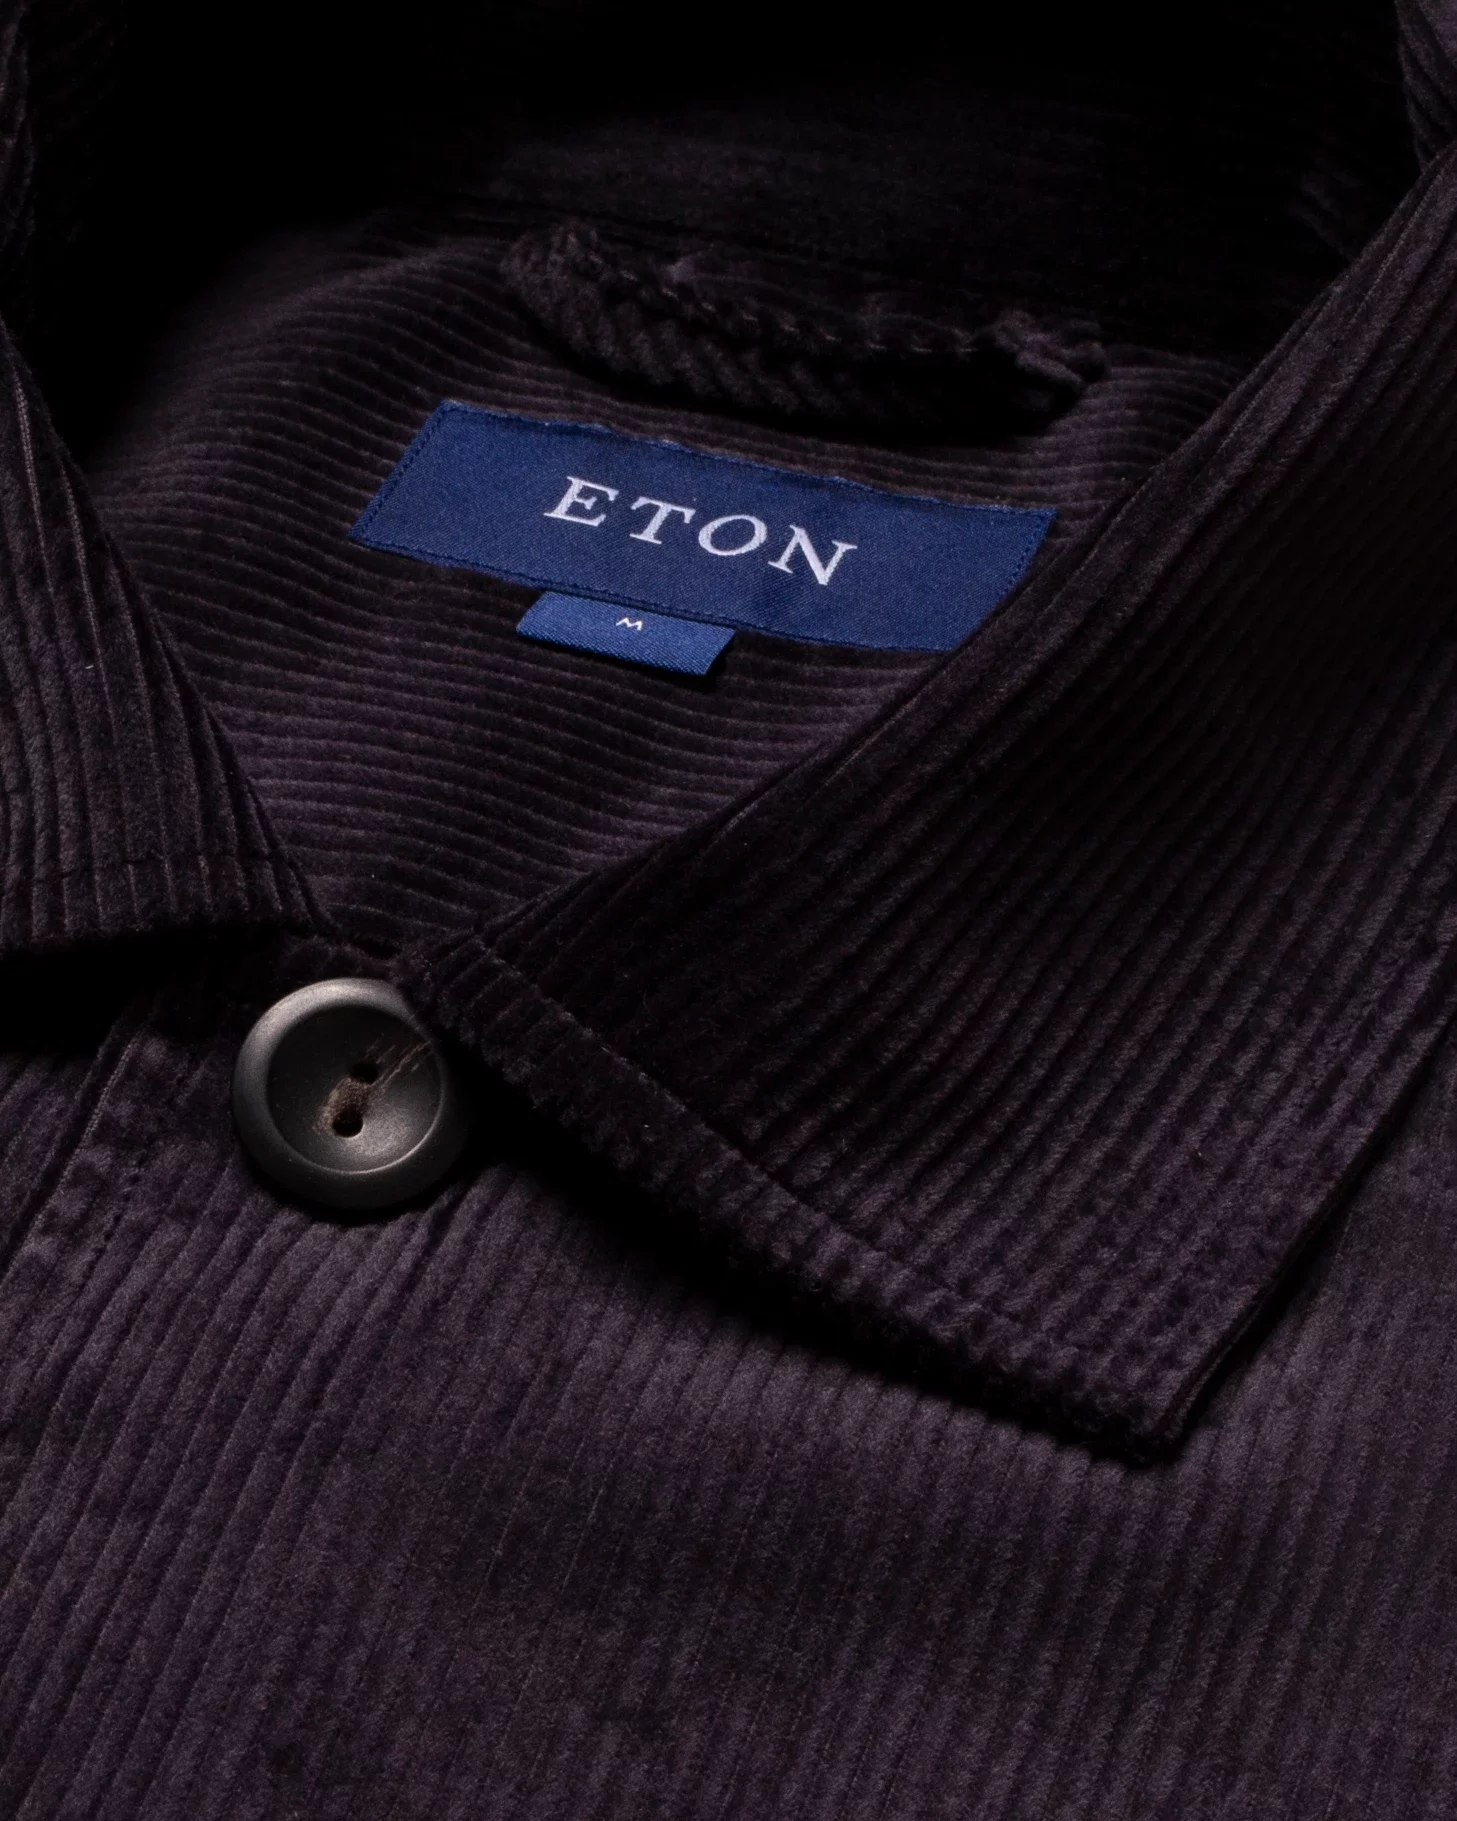 Eton - dark grey cordoroy